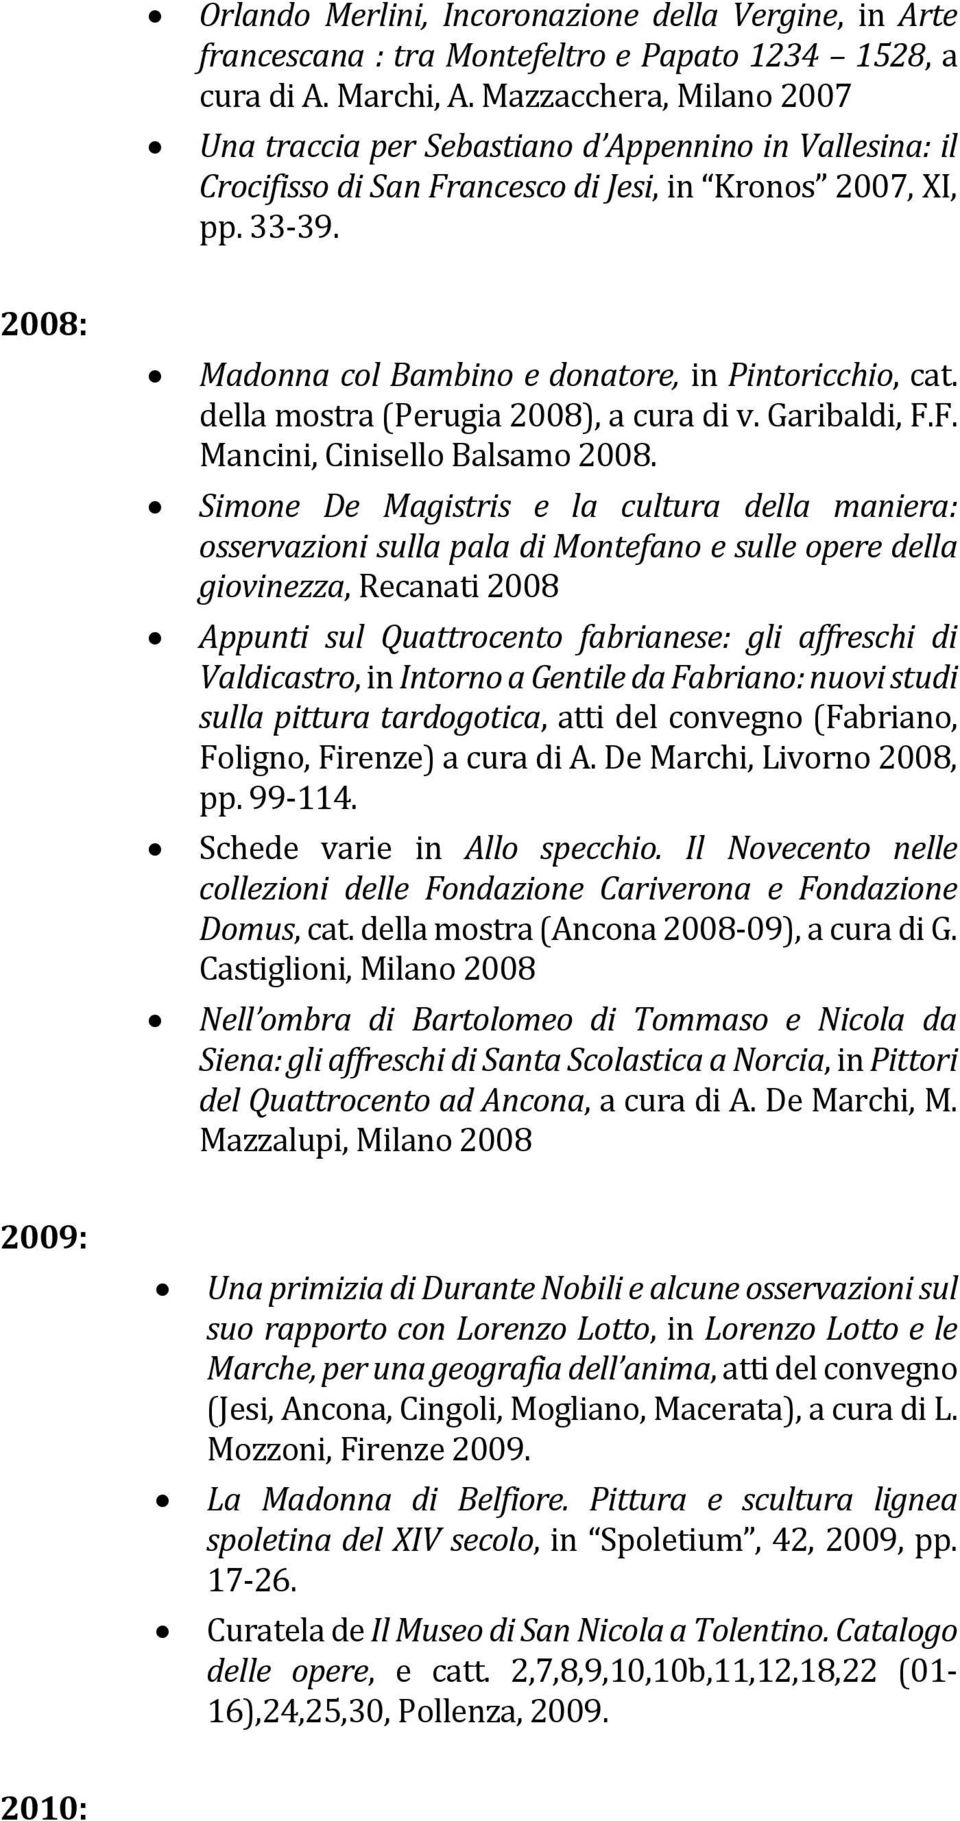 2008: Madonna col Bambino e donatore, in Pintoricchio, cat. della mostra (Perugia 2008), a cura di v. Garibaldi, F.F. Mancini, Cinisello Balsamo 2008.